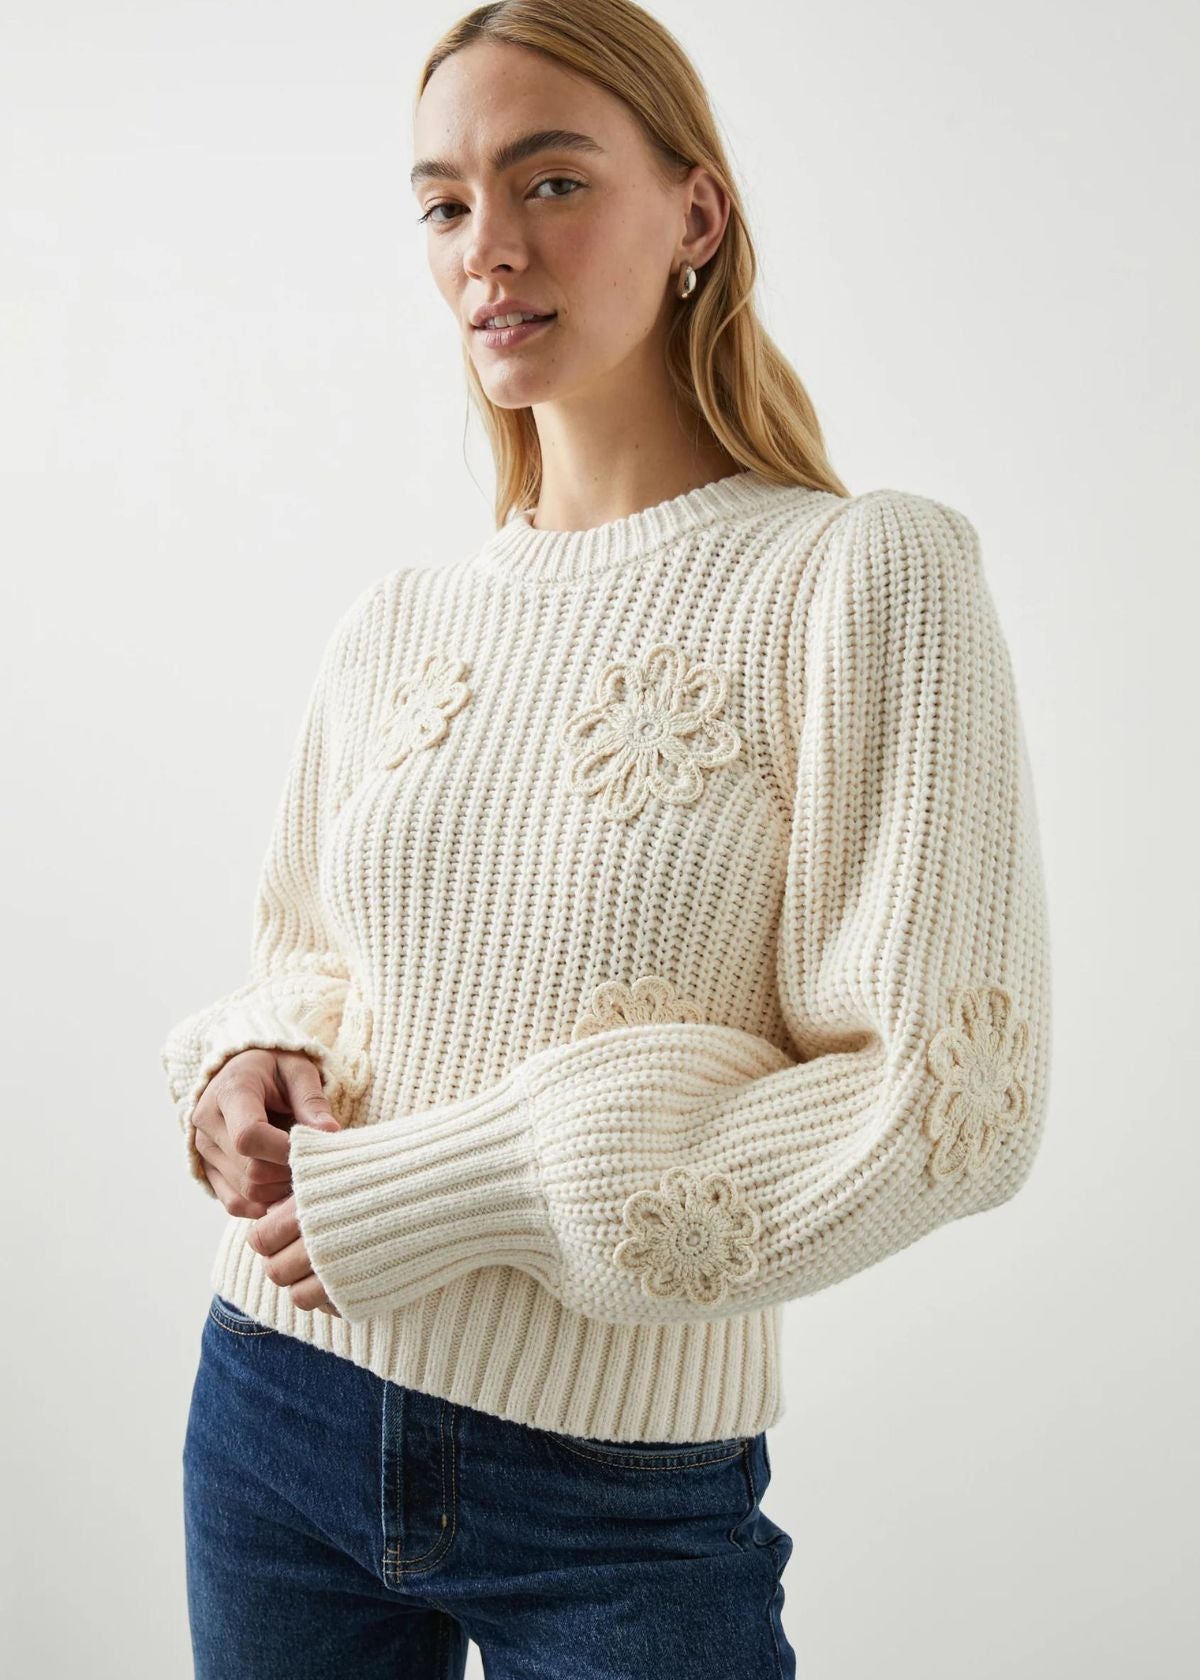 RAILS Romy Sweater - Ivory Crochet Daisies